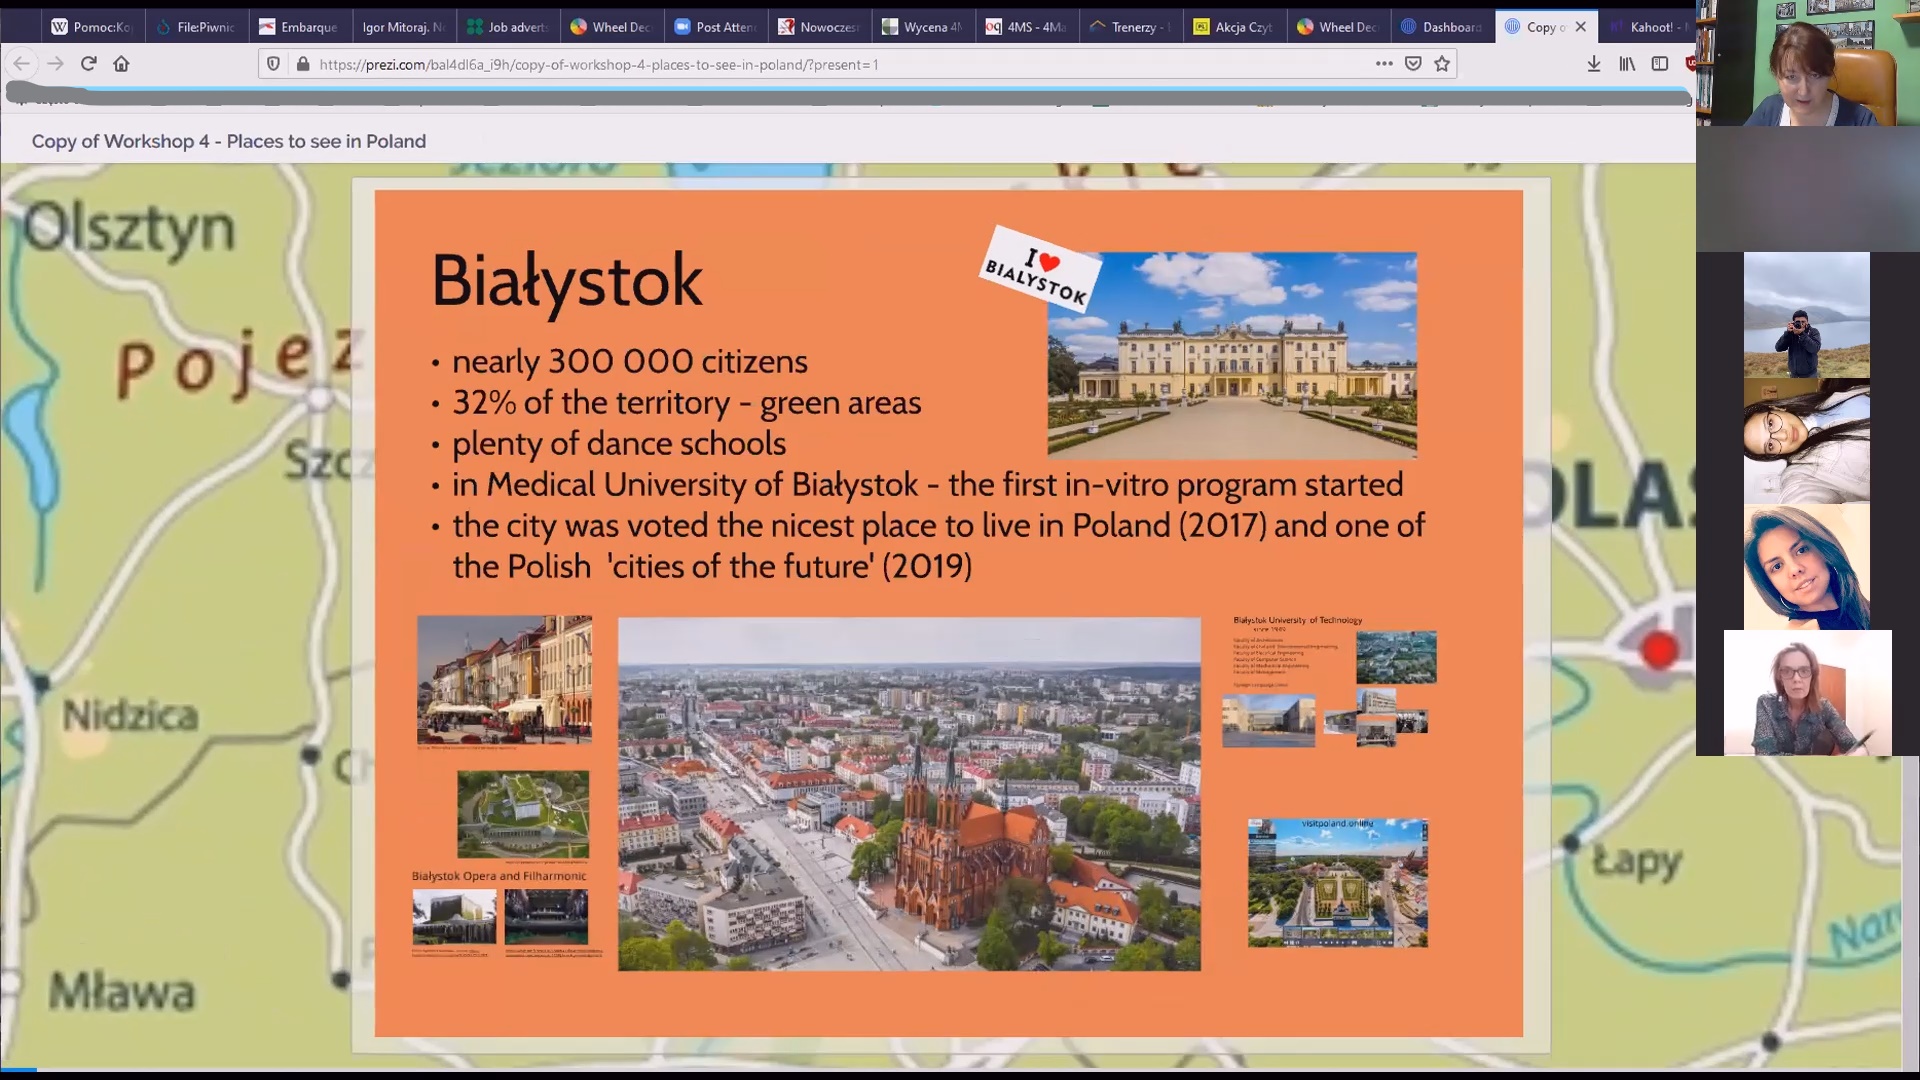 Zrzut ekranu - slajd na temat Białegostoku